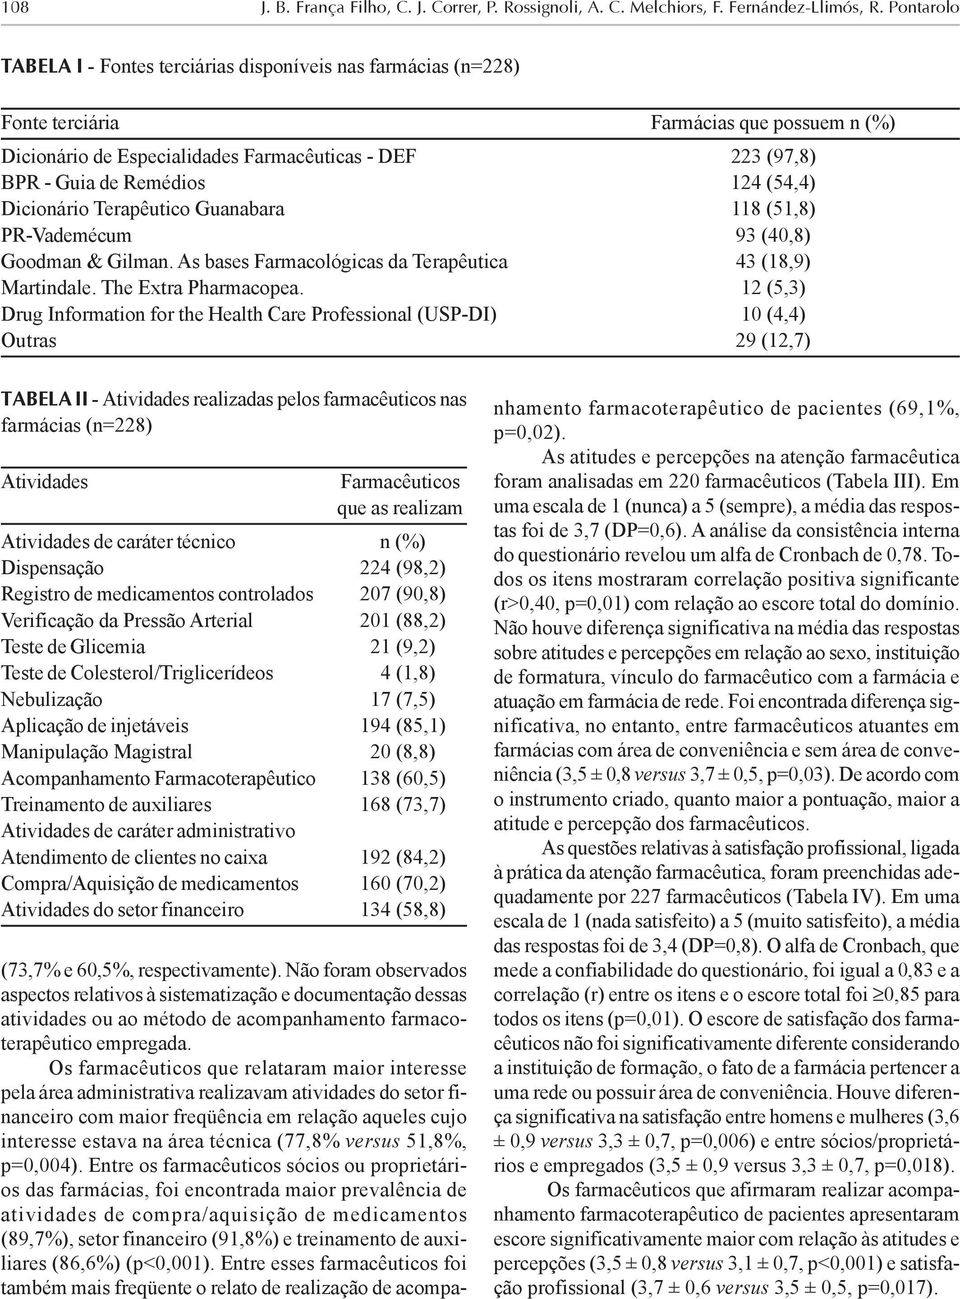 124 (54,4) Dicionário Terapêutico Guanabara 118 (51,8) PR-Vademécum 93 (40,8) Goodman & Gilman. As bases Farmacológicas da Terapêutica 43 (18,9) Martindale. The Extra Pharmacopea.